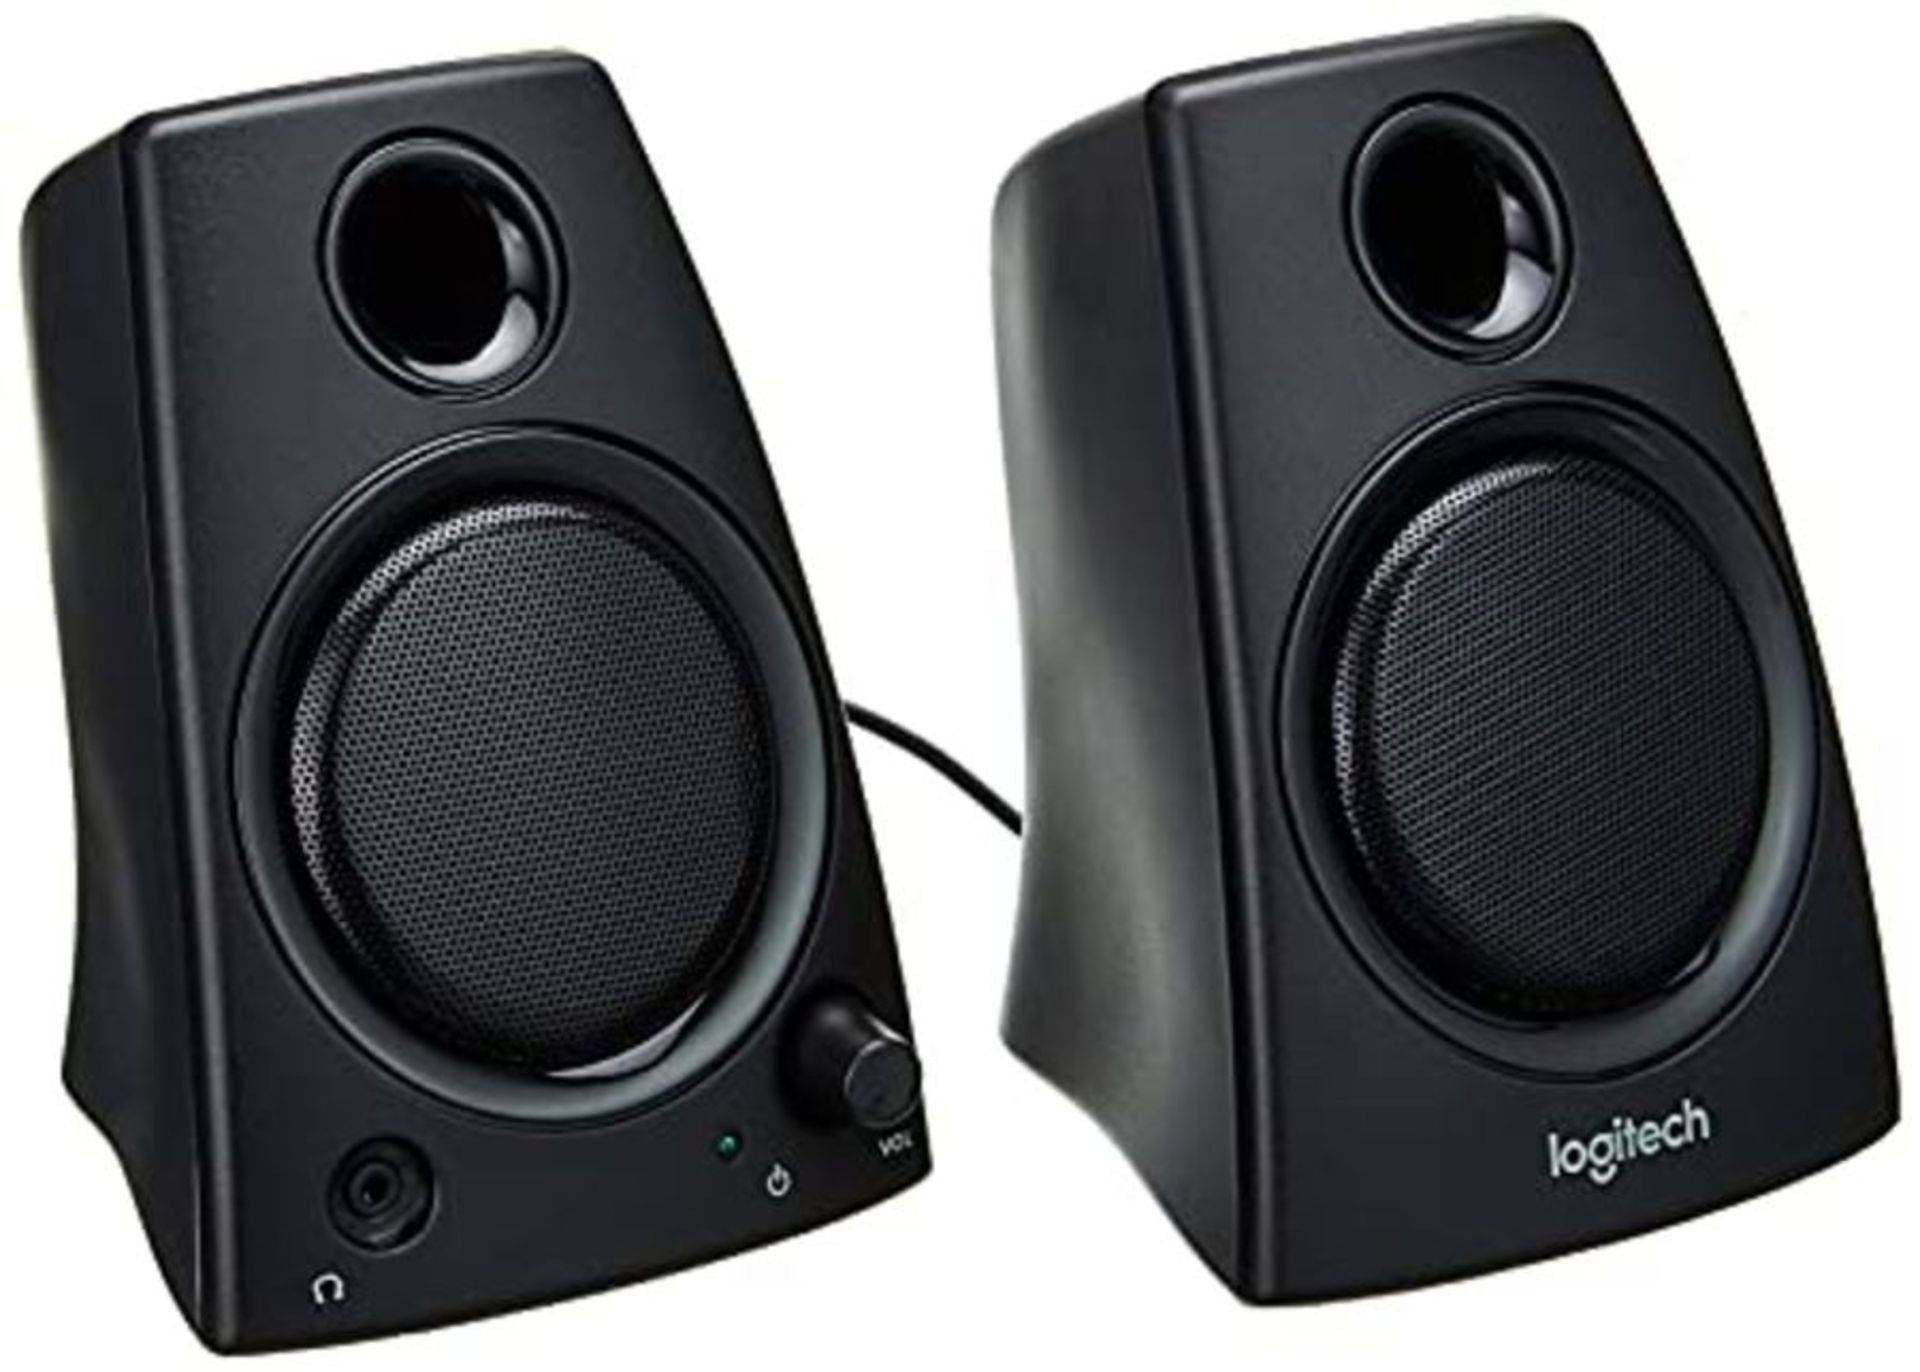 Logitech Z130 PC Speakers, Full Stereo Sound, Strong Bass, 10 Watts Peak Power, 3.5mm